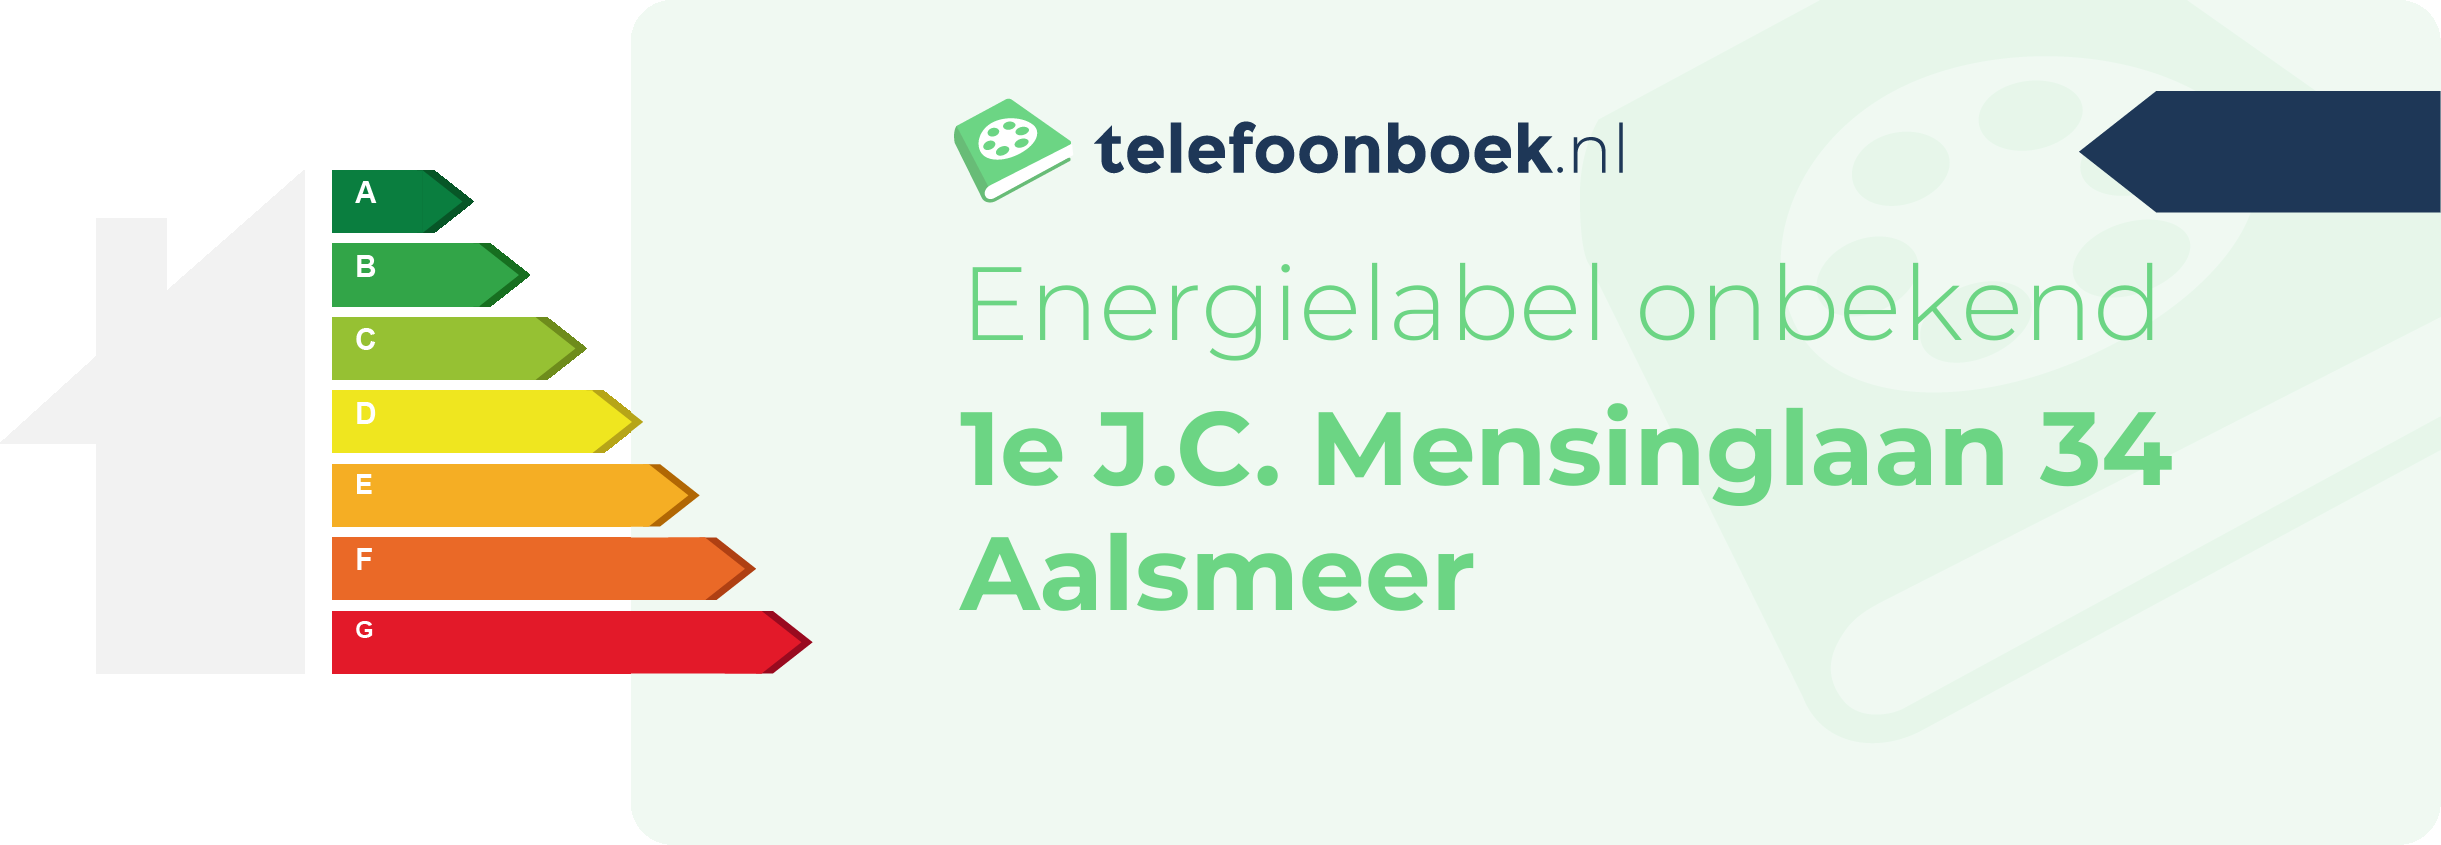 Energielabel 1e J.C. Mensinglaan 34 Aalsmeer